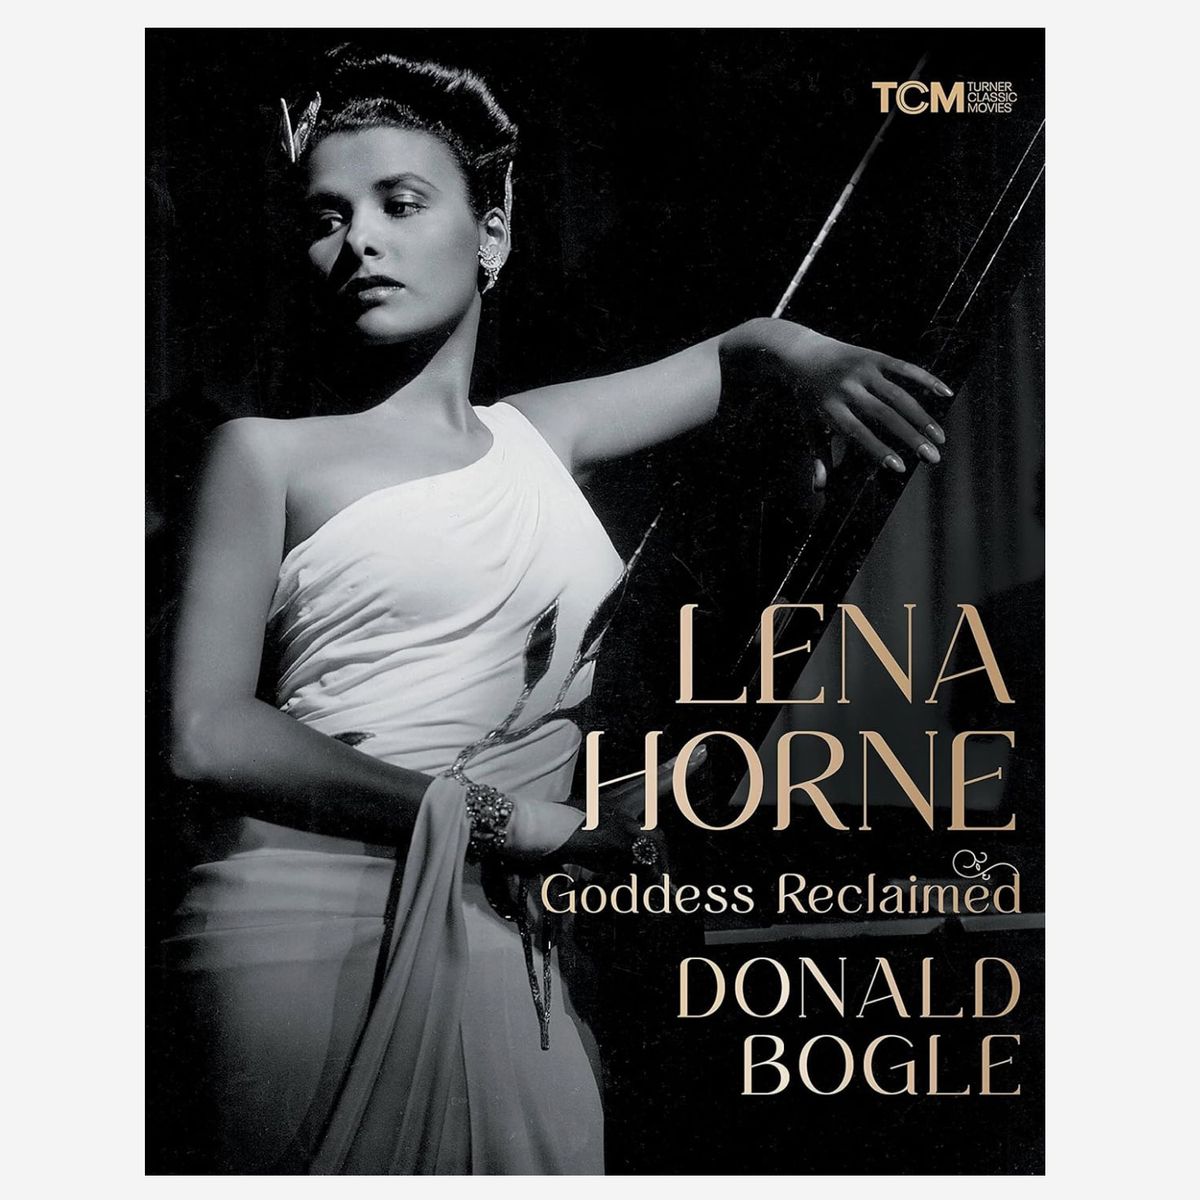 ‘Lena Horne: Goddess Reclaimed’ by Donald Bogle